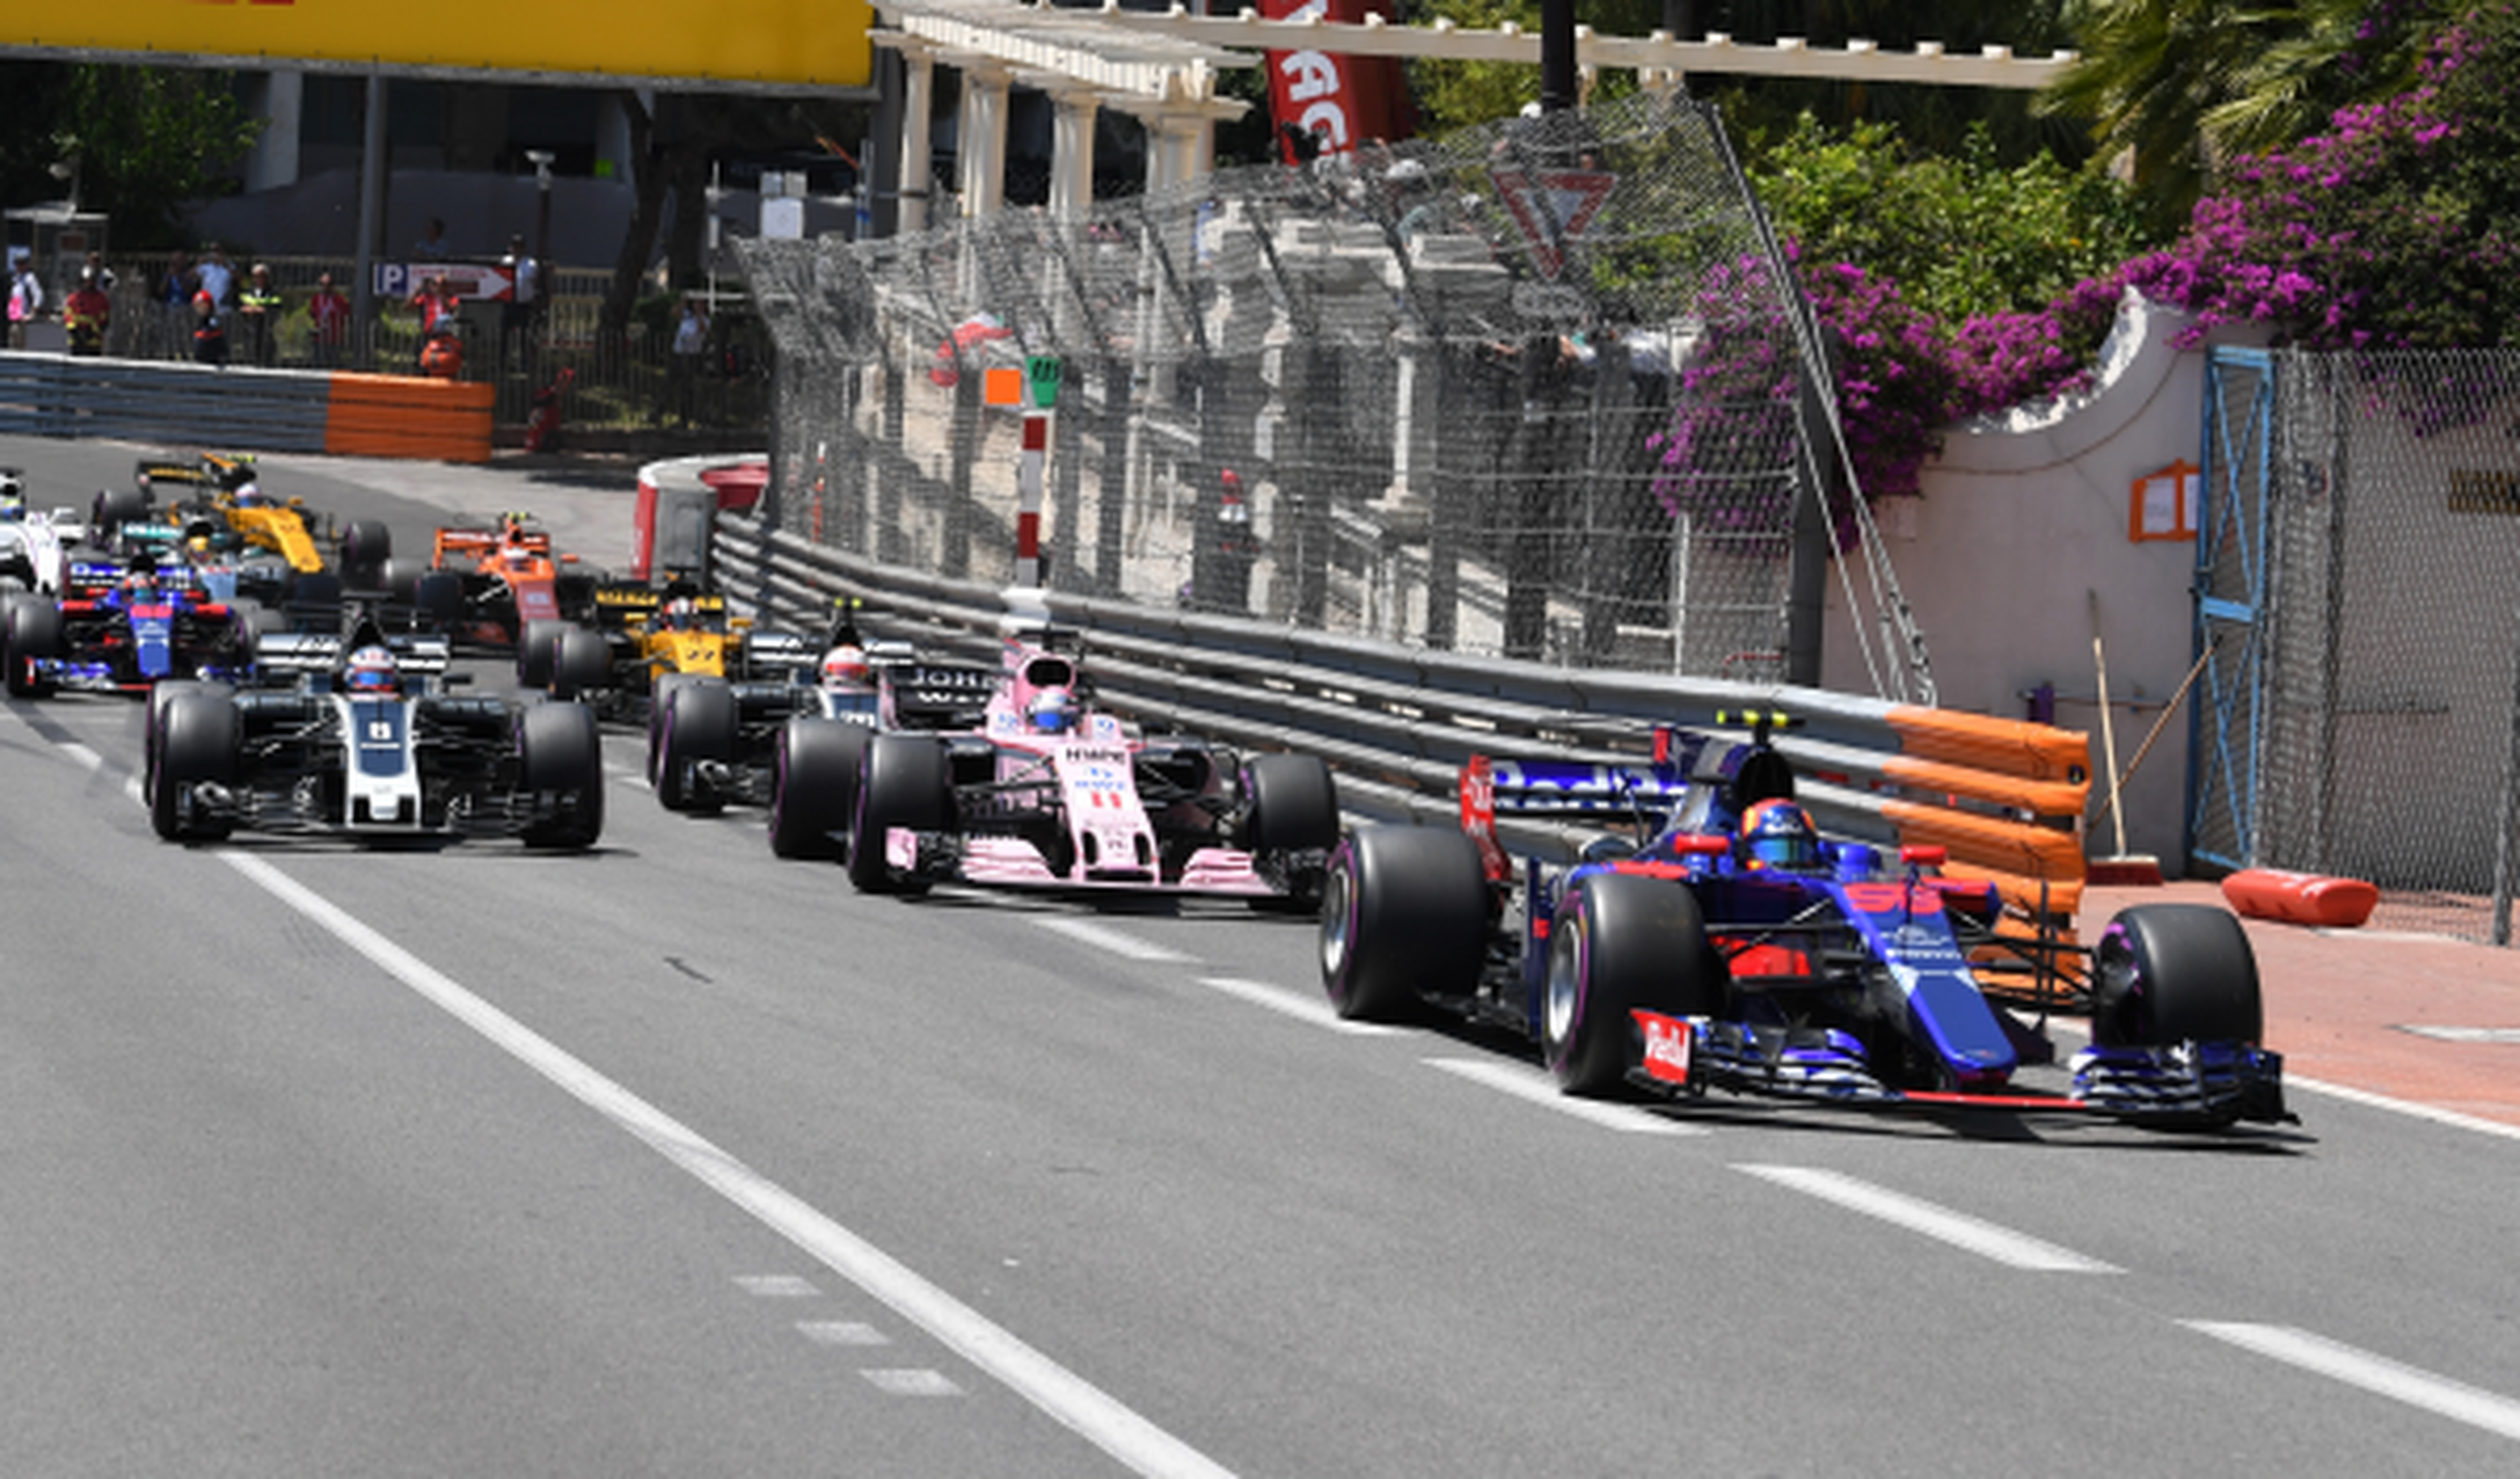 Magistral sexto puesto de Carlos Sainz en Mónaco